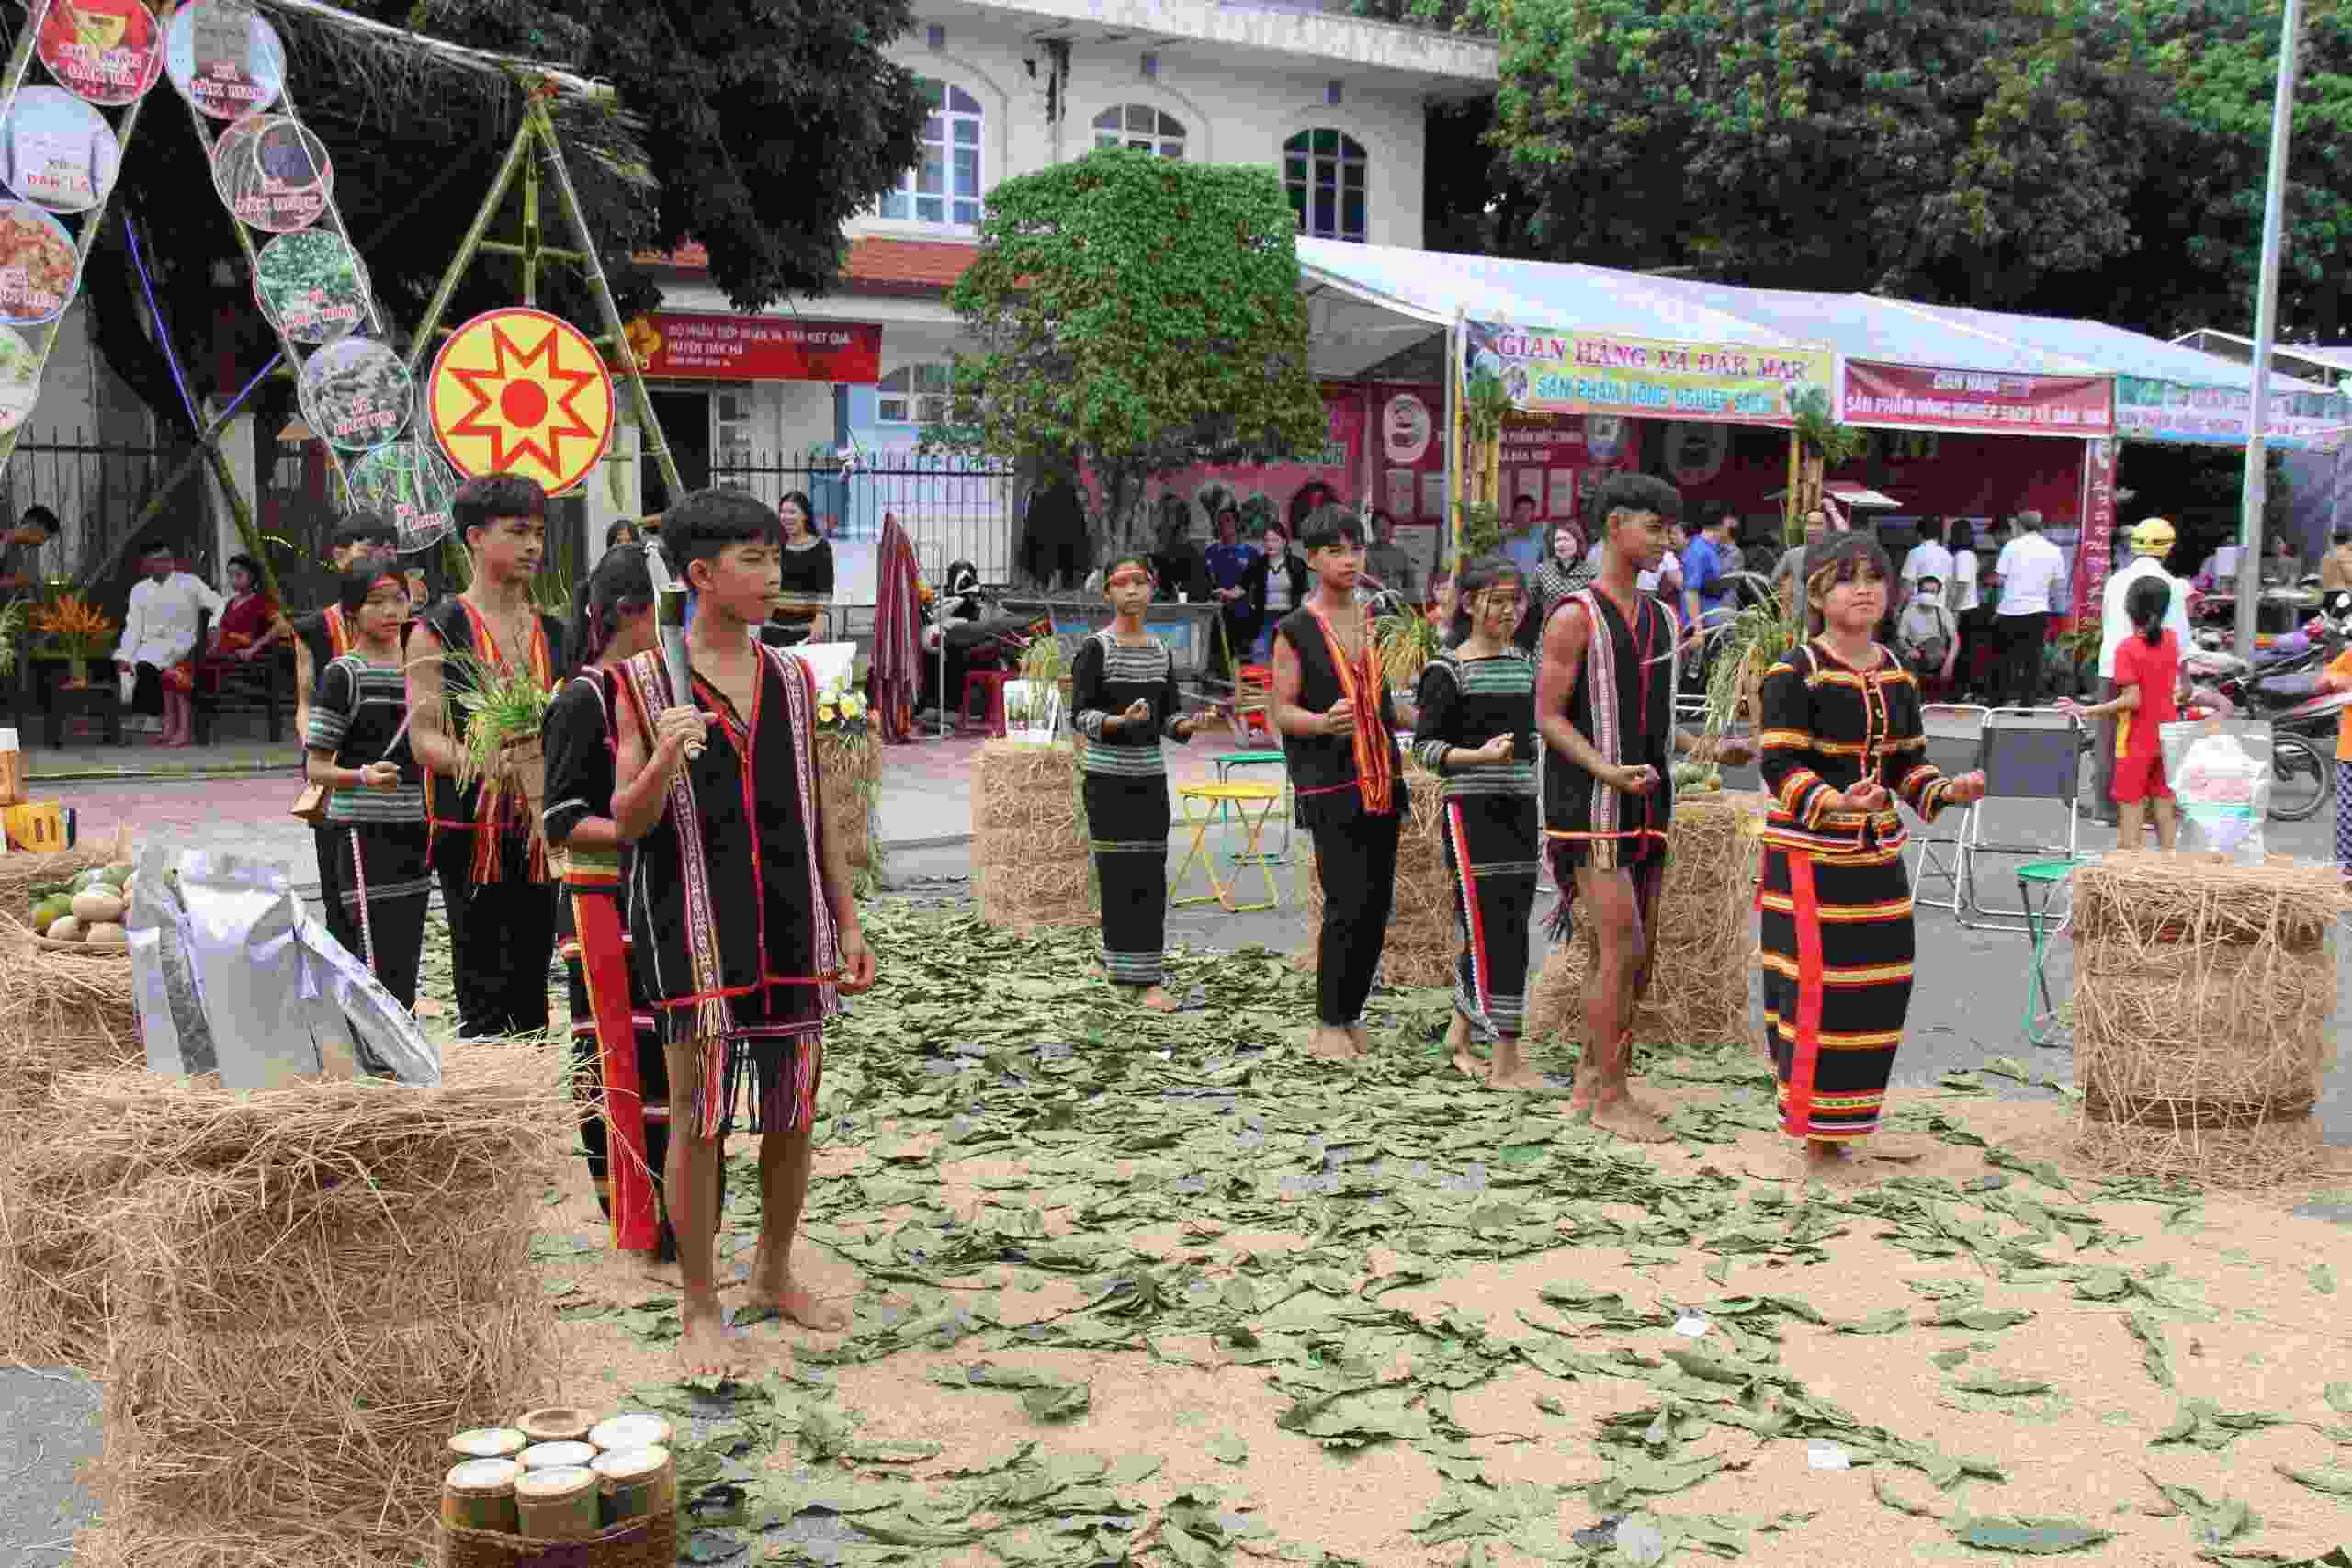 Phần thi trình diễn trang phục truyền thống nhằm quảng bá văn hoá các dân tộc trên địa bàn huyện Đắk Hà. Ảnh: Lê Nguyên